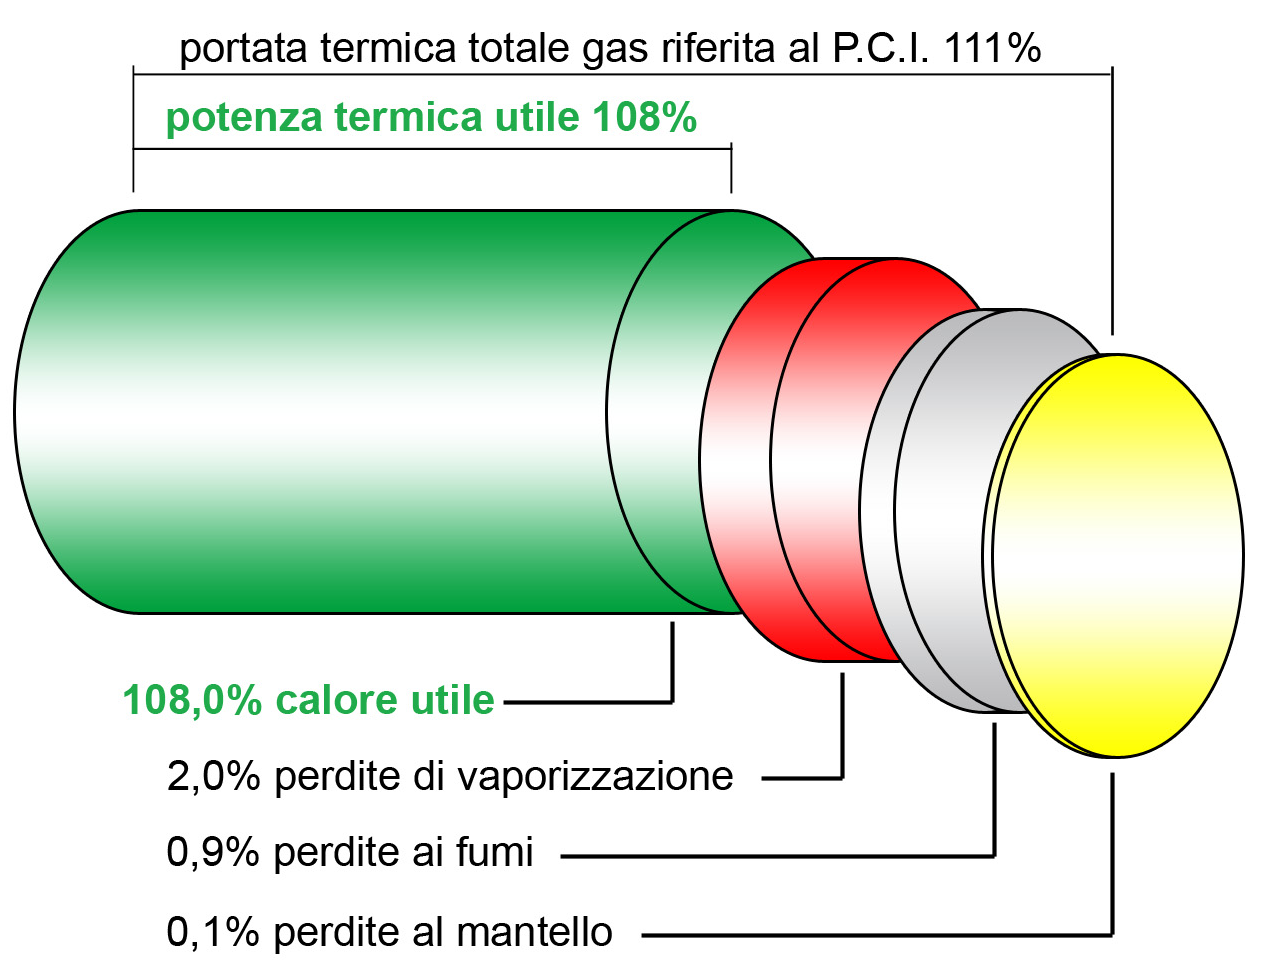 La condensazione La tecnica della condensazione applicata alle caldaie a gas garantisce minor consumo delle risorse energetiche e una forte riduzione delle emissioni inquinanti rispetto ai sistemi